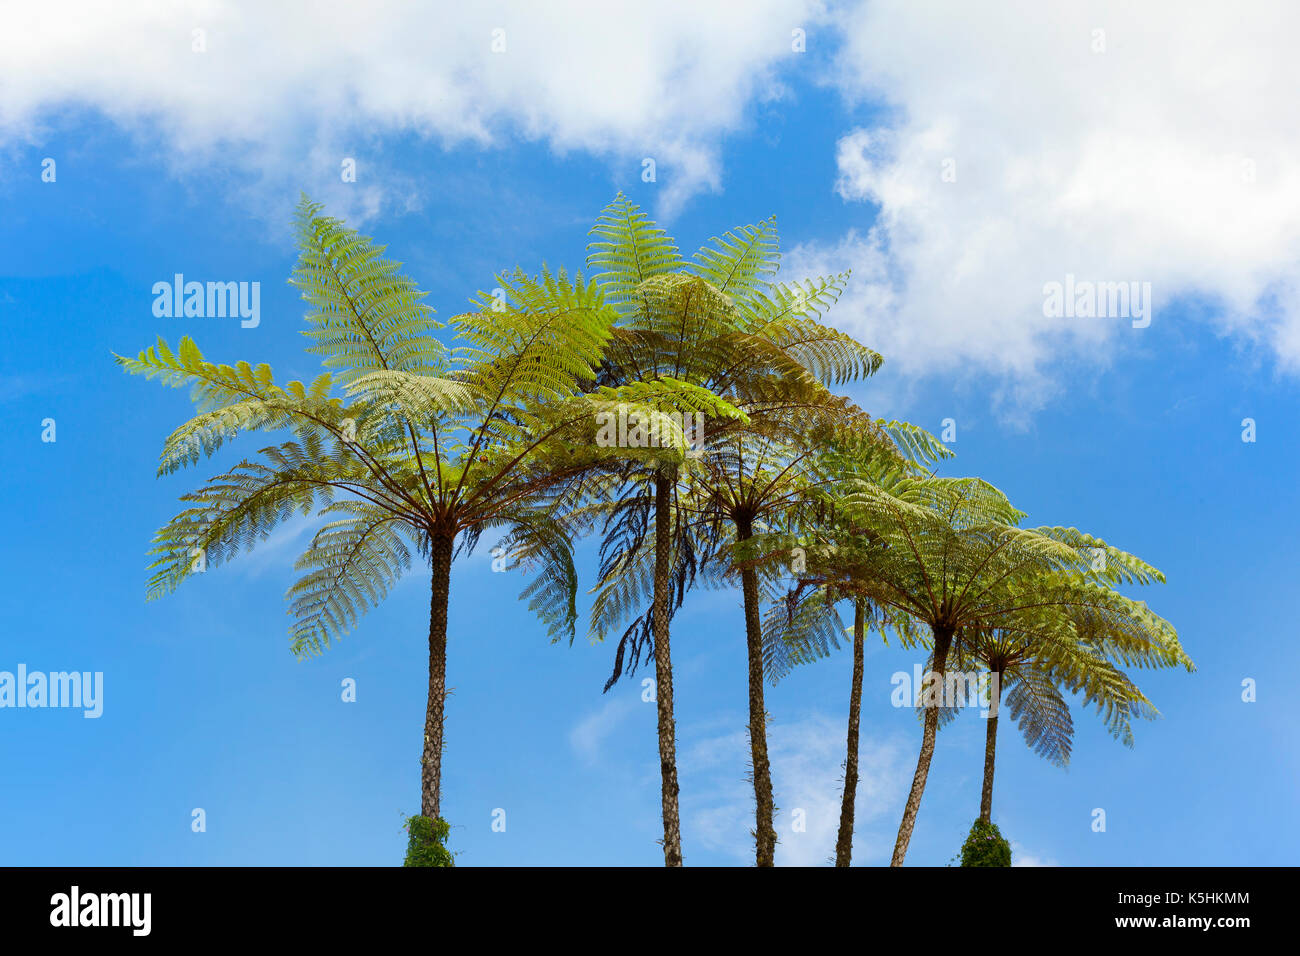 Baumfarne, Cameron Highlands, Malyasia, helle, sonnenbeschienene vor blauem Himmel Stockfoto